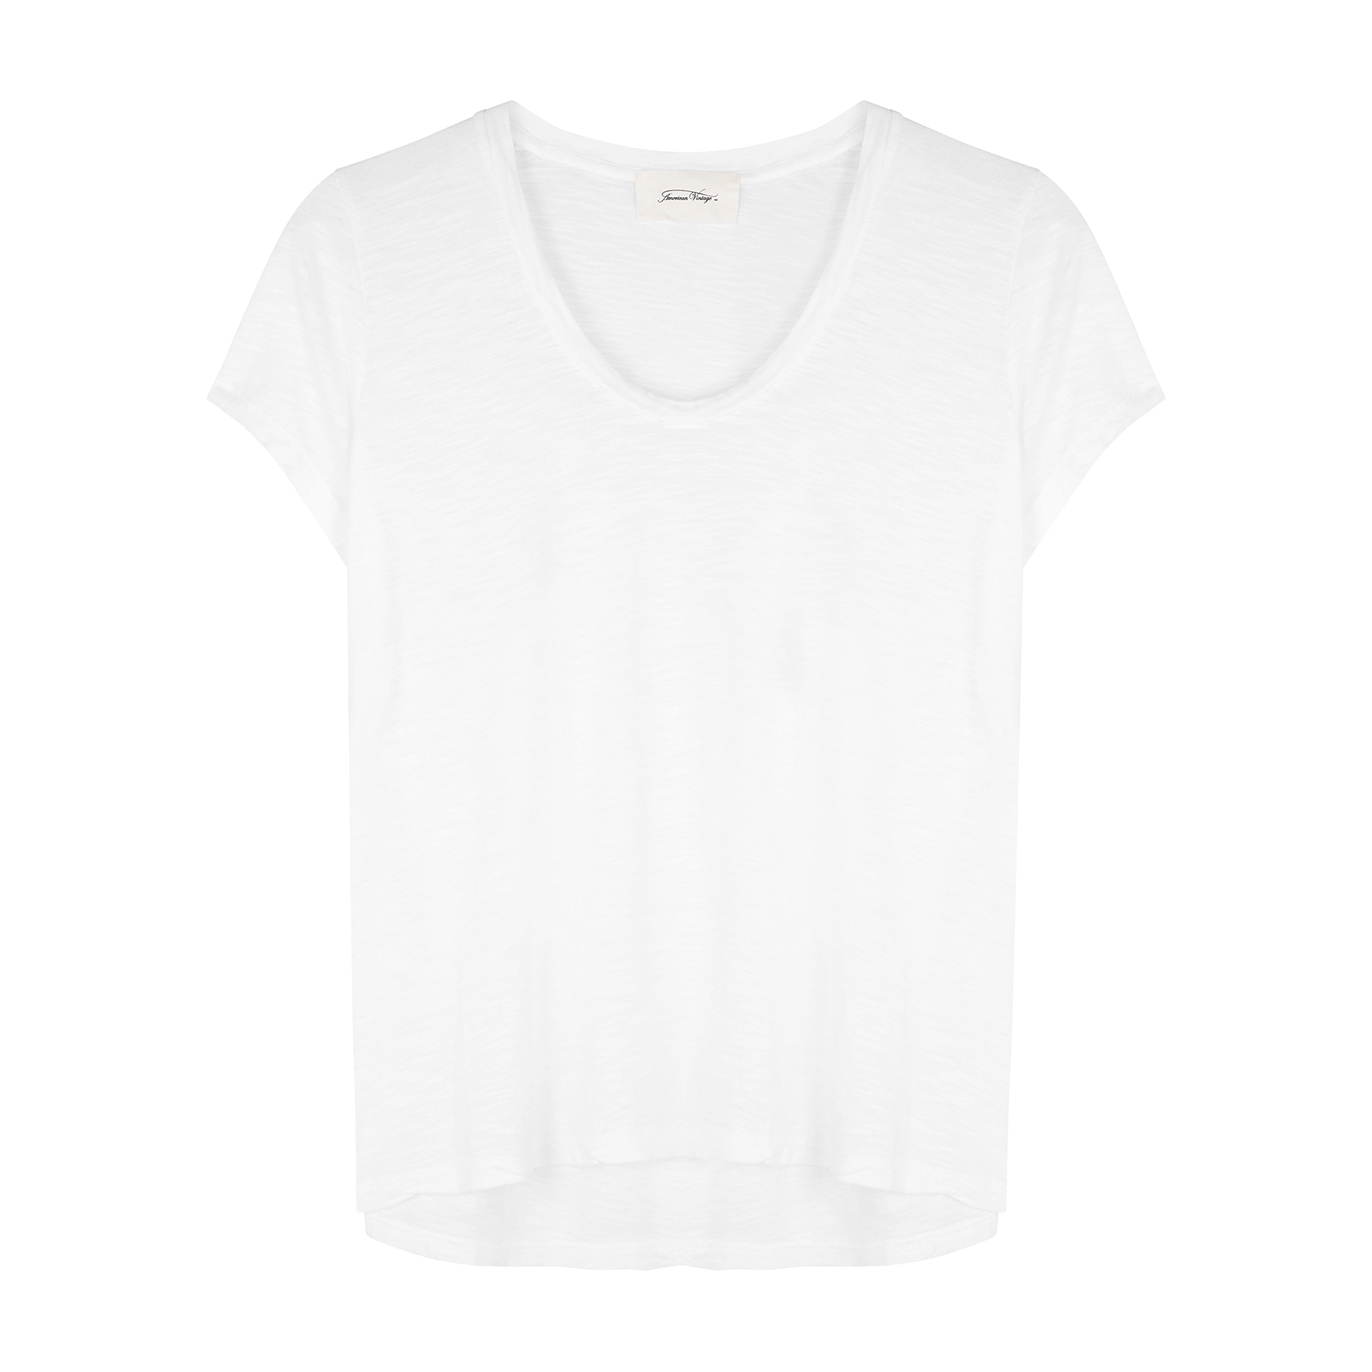 American Vintage Jacksonville White Slubbed Cotton-blend T-shirt - S